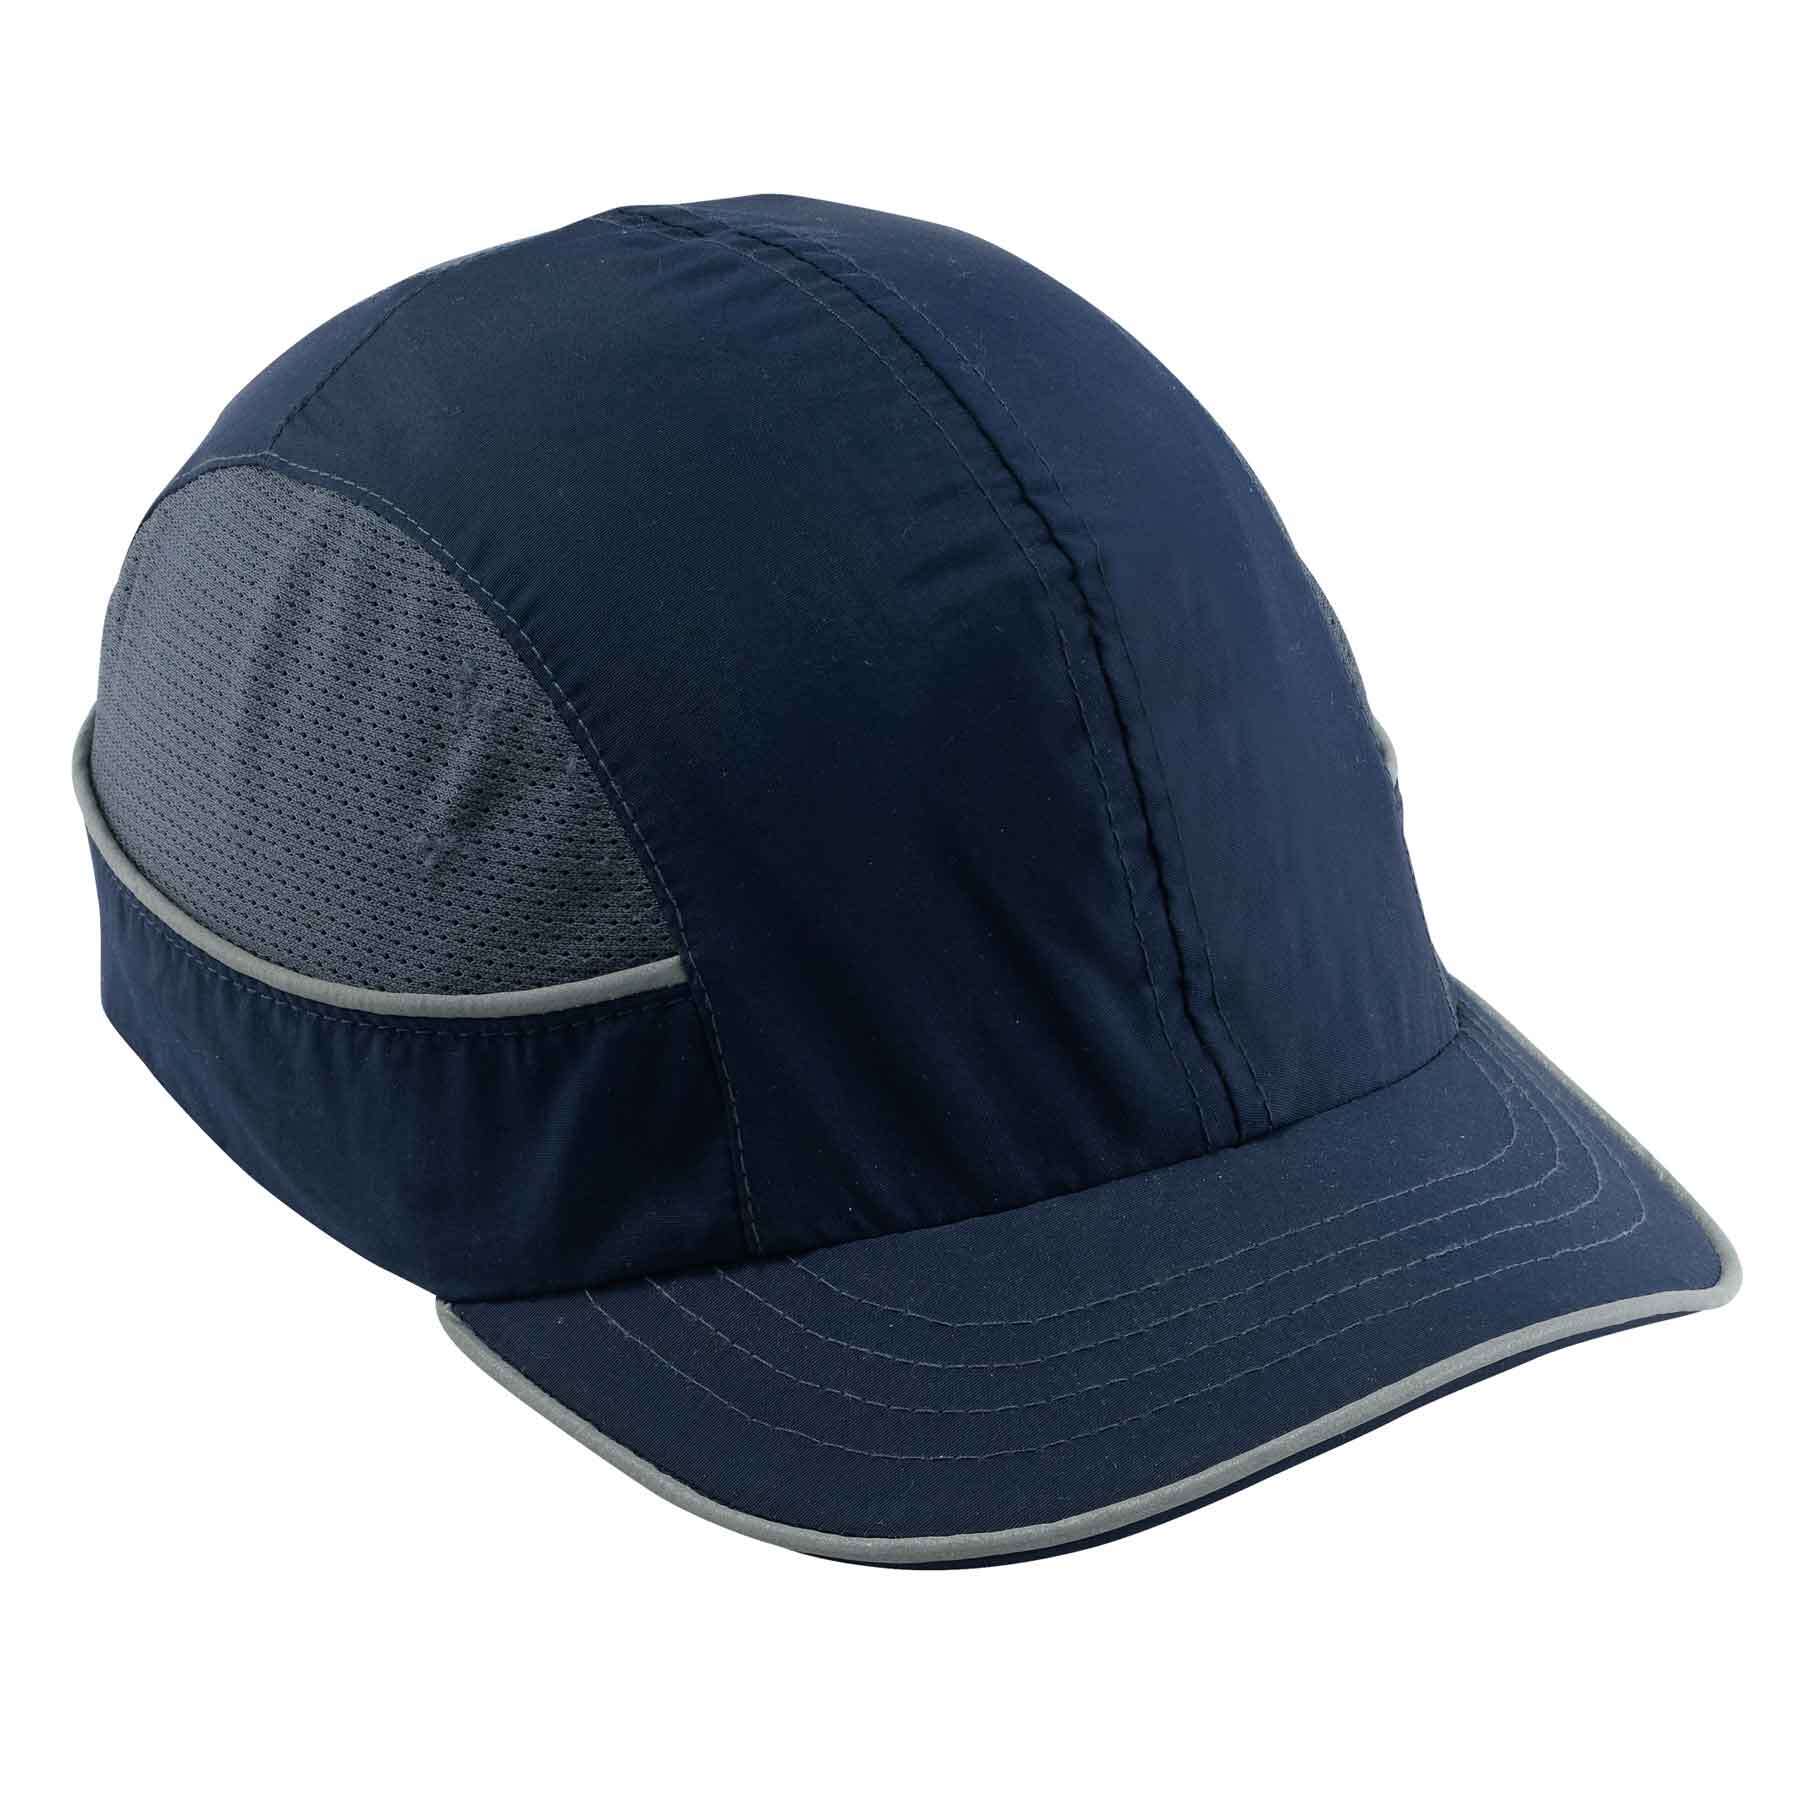 Bump Cap Hat - Baseball/Bump Caps